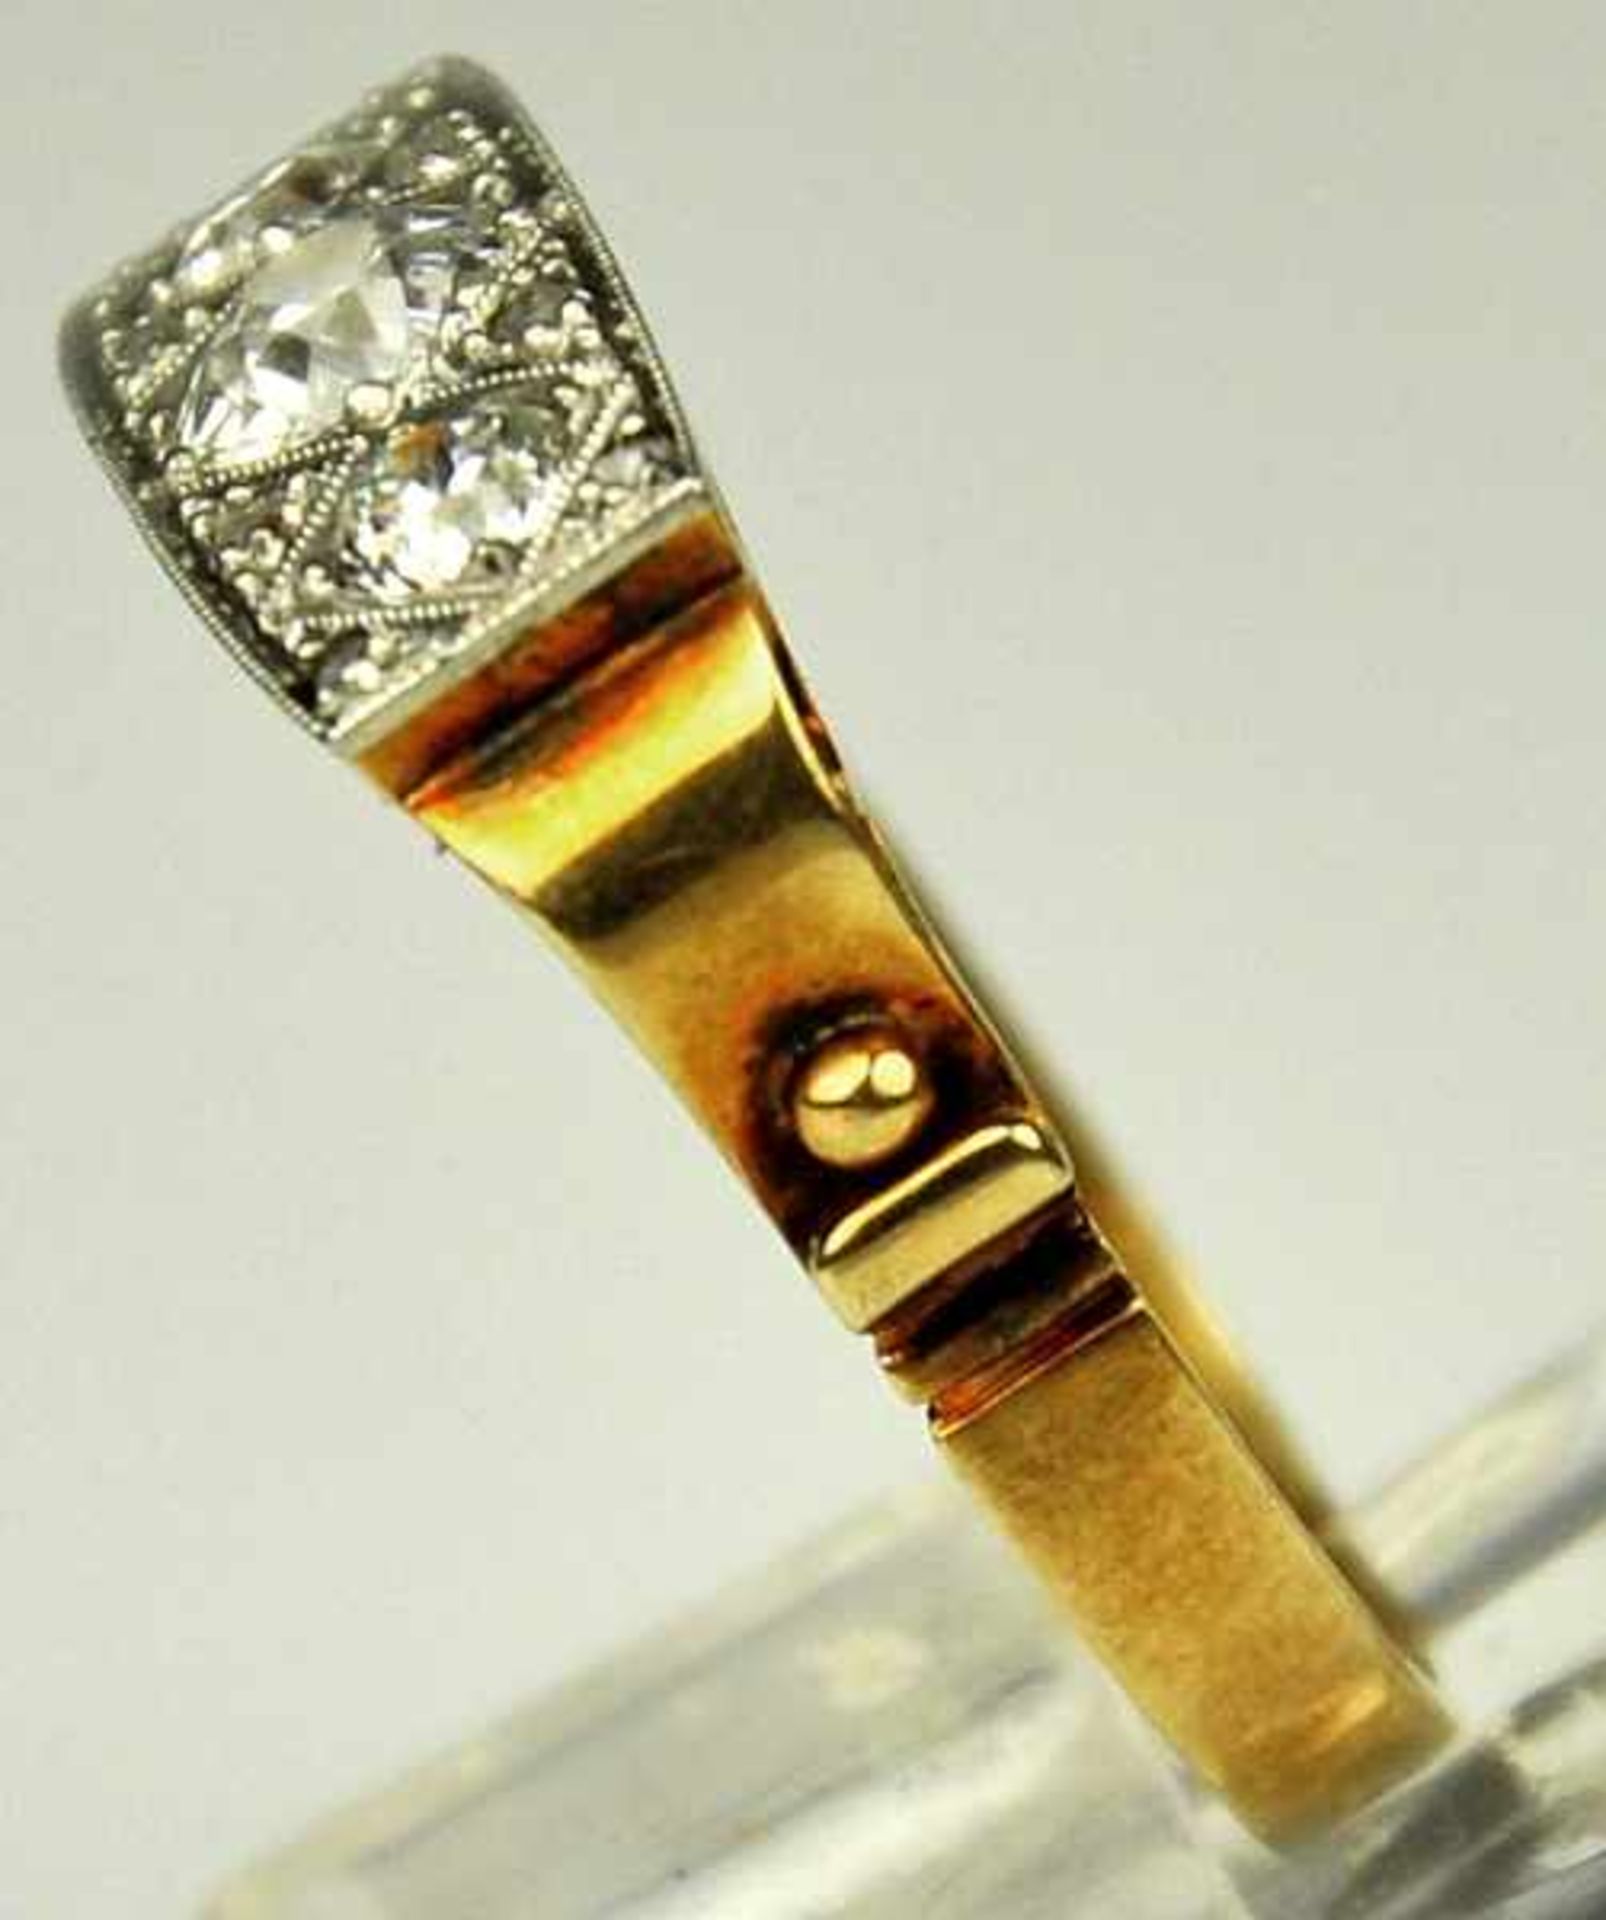 DIAMANT-RING rechteckige Schauseite besetzt mit 3 grösseren Altschliffdiamanten um 0,7-0,75ct, - Image 3 of 5